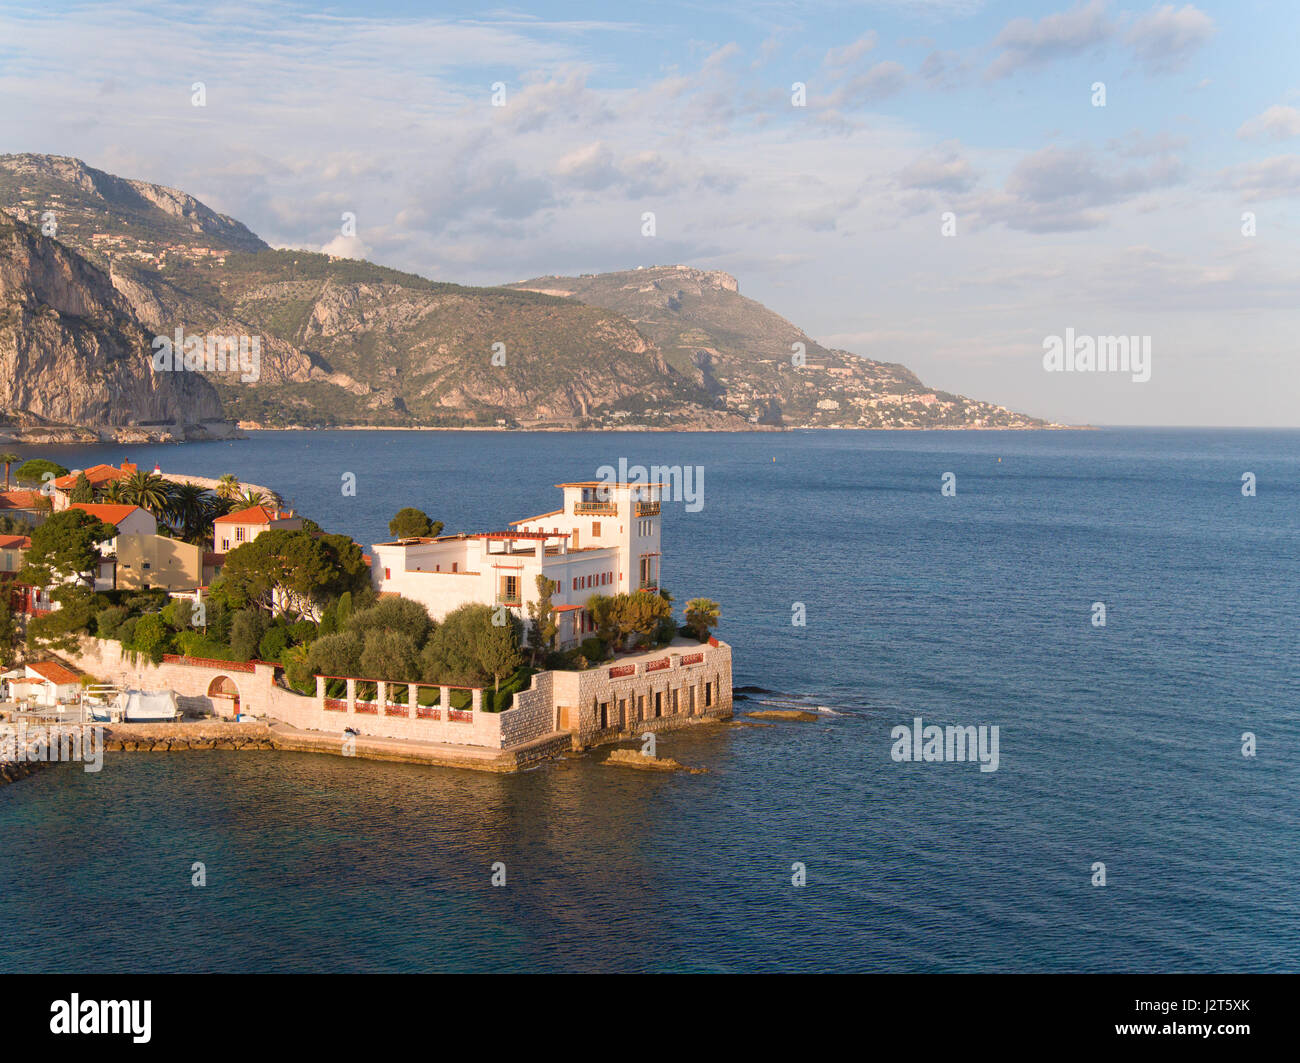 LUFTAUFNAHME. Kerylos Griechische Villa mit Blick auf den Golf von Saint-Hospice. Beaulieu-sur-Mer, Französische Riviera, Frankreich. Stockfoto